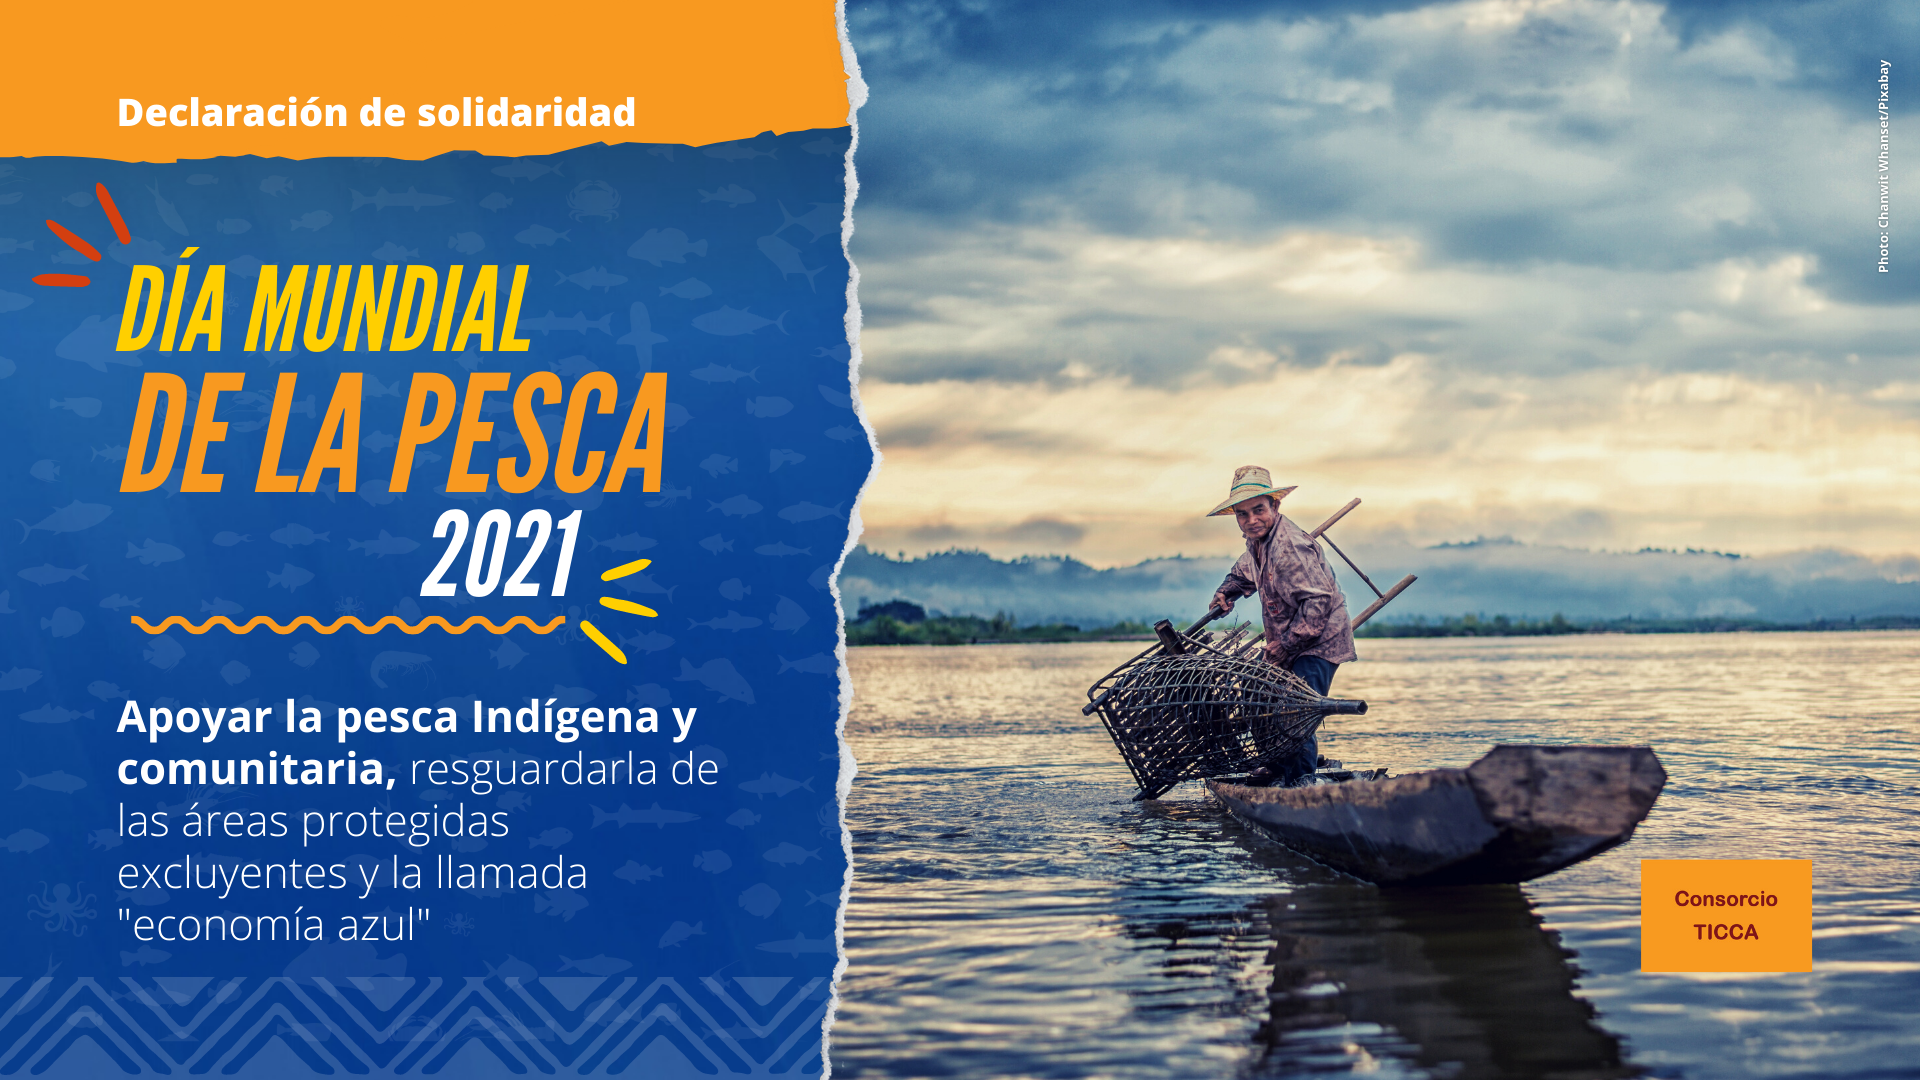 Apoyar la pesca indígena y comunitaria, resguardarla de las áreas  protegidas excluyentes y de la llamada economía azul - Mundo - ICCA  Consortium